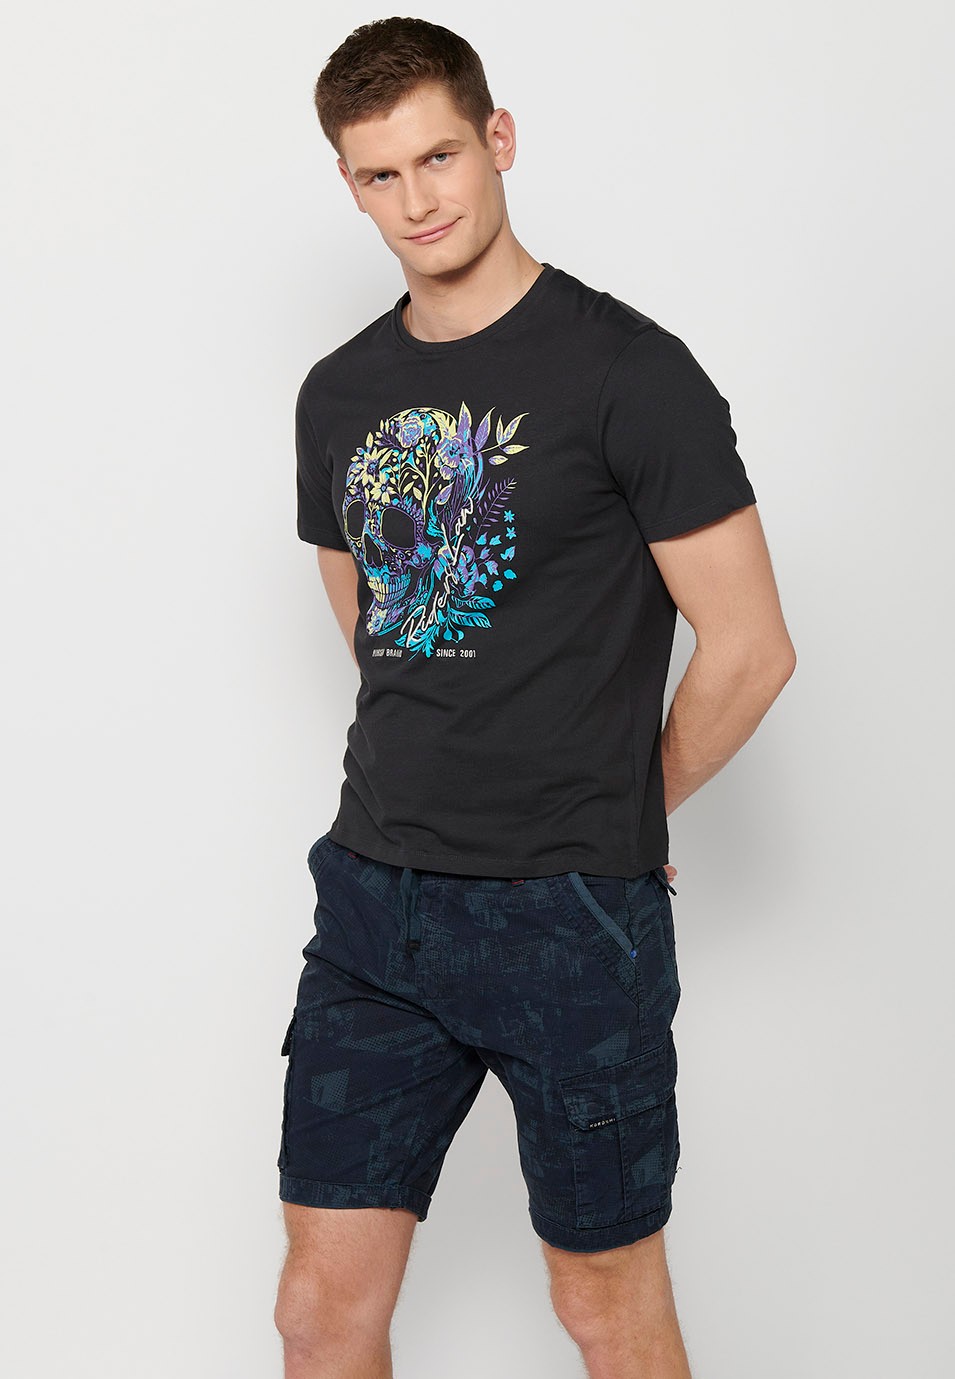 T-shirt en coton à manches courtes, imprimé devant, coloris bleu pour homme